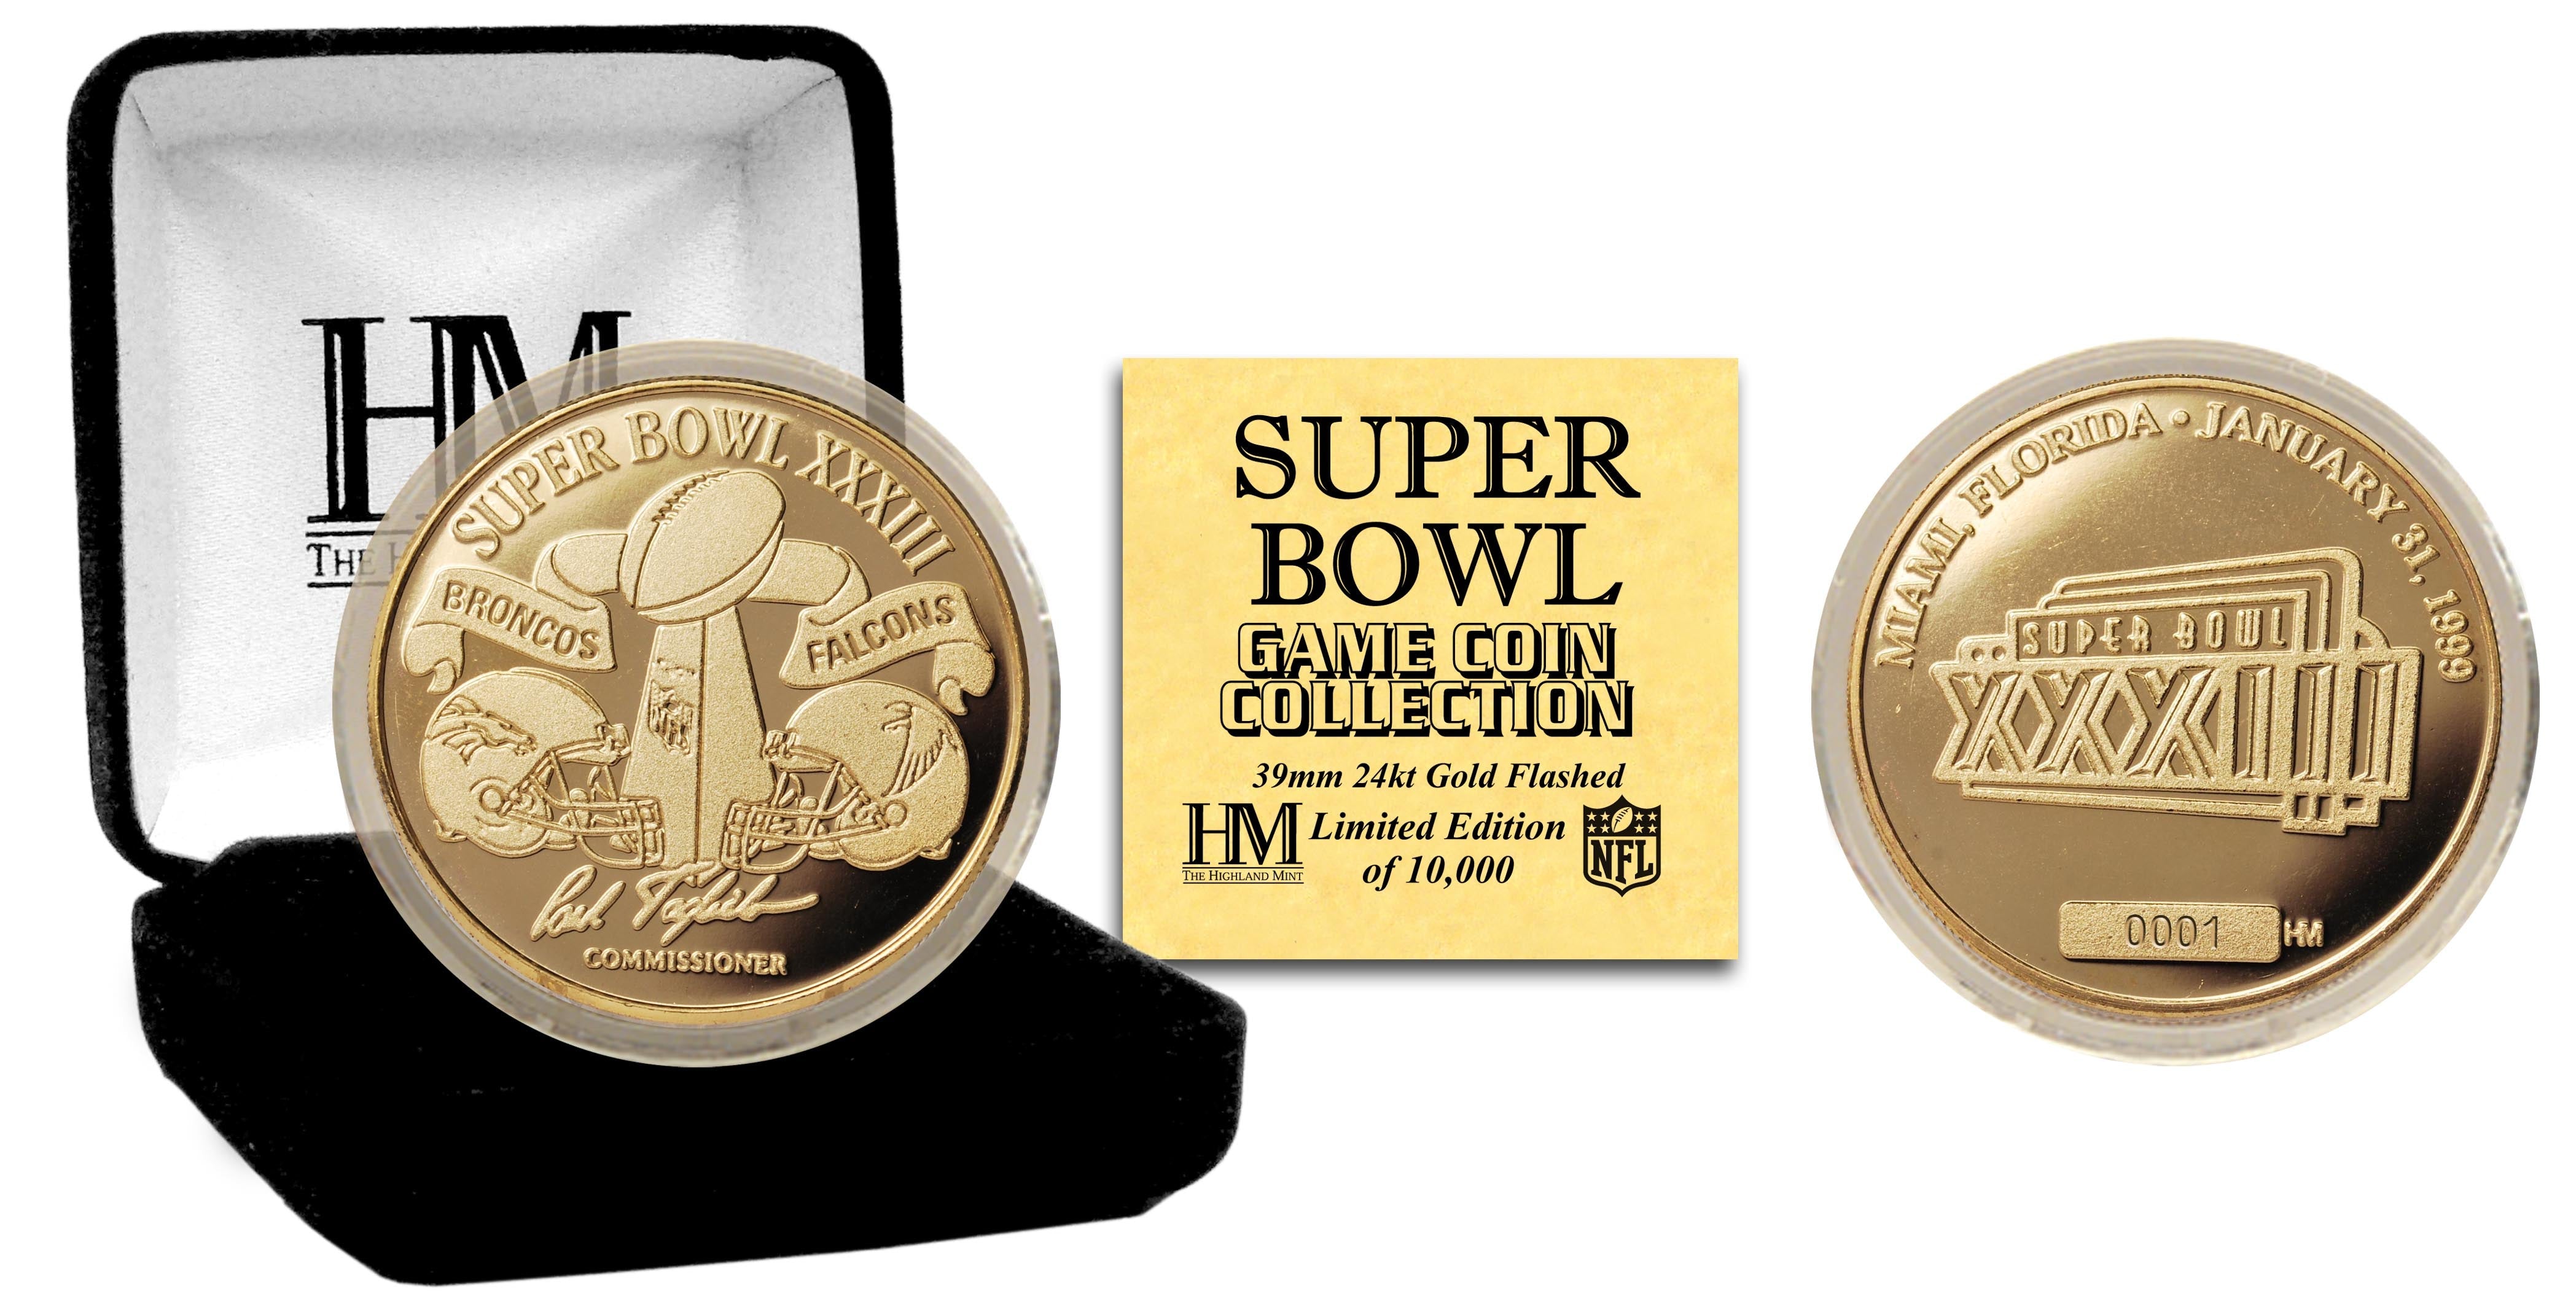 Super Bowl XXXIII 24kt Gold Flip Coin